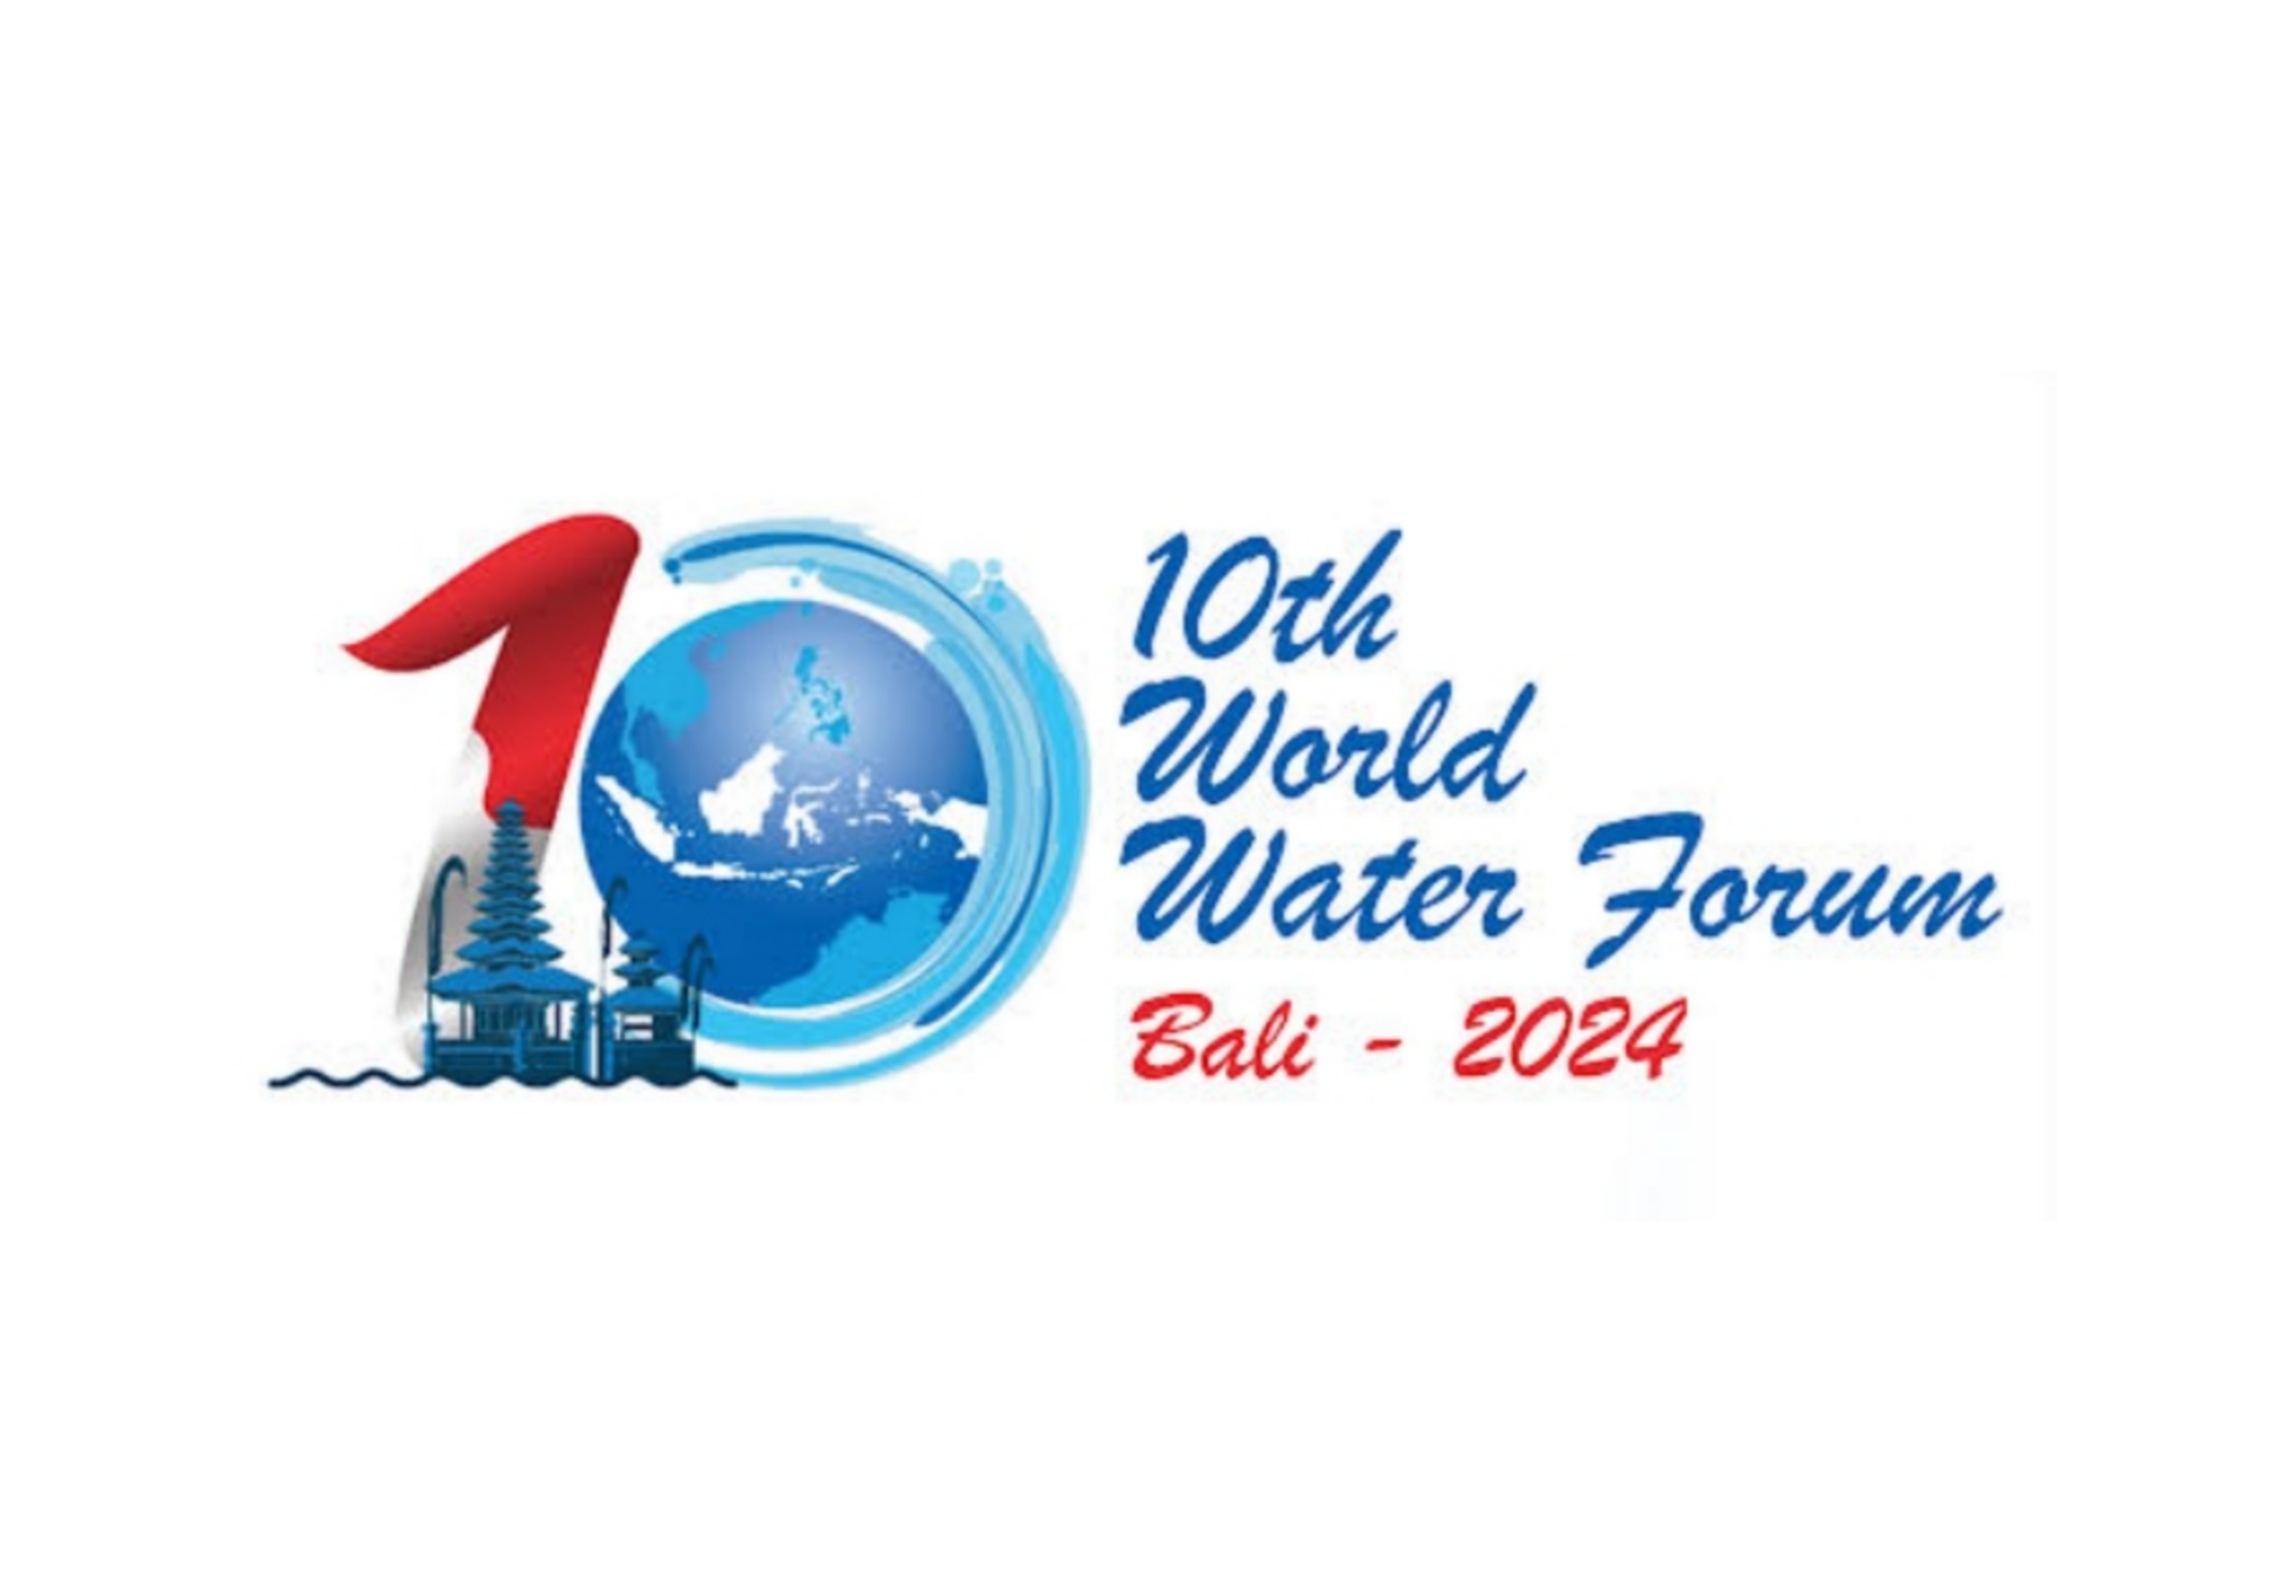 Ingin Liput World Water Forum ke-10? Ini Link Registrasinya